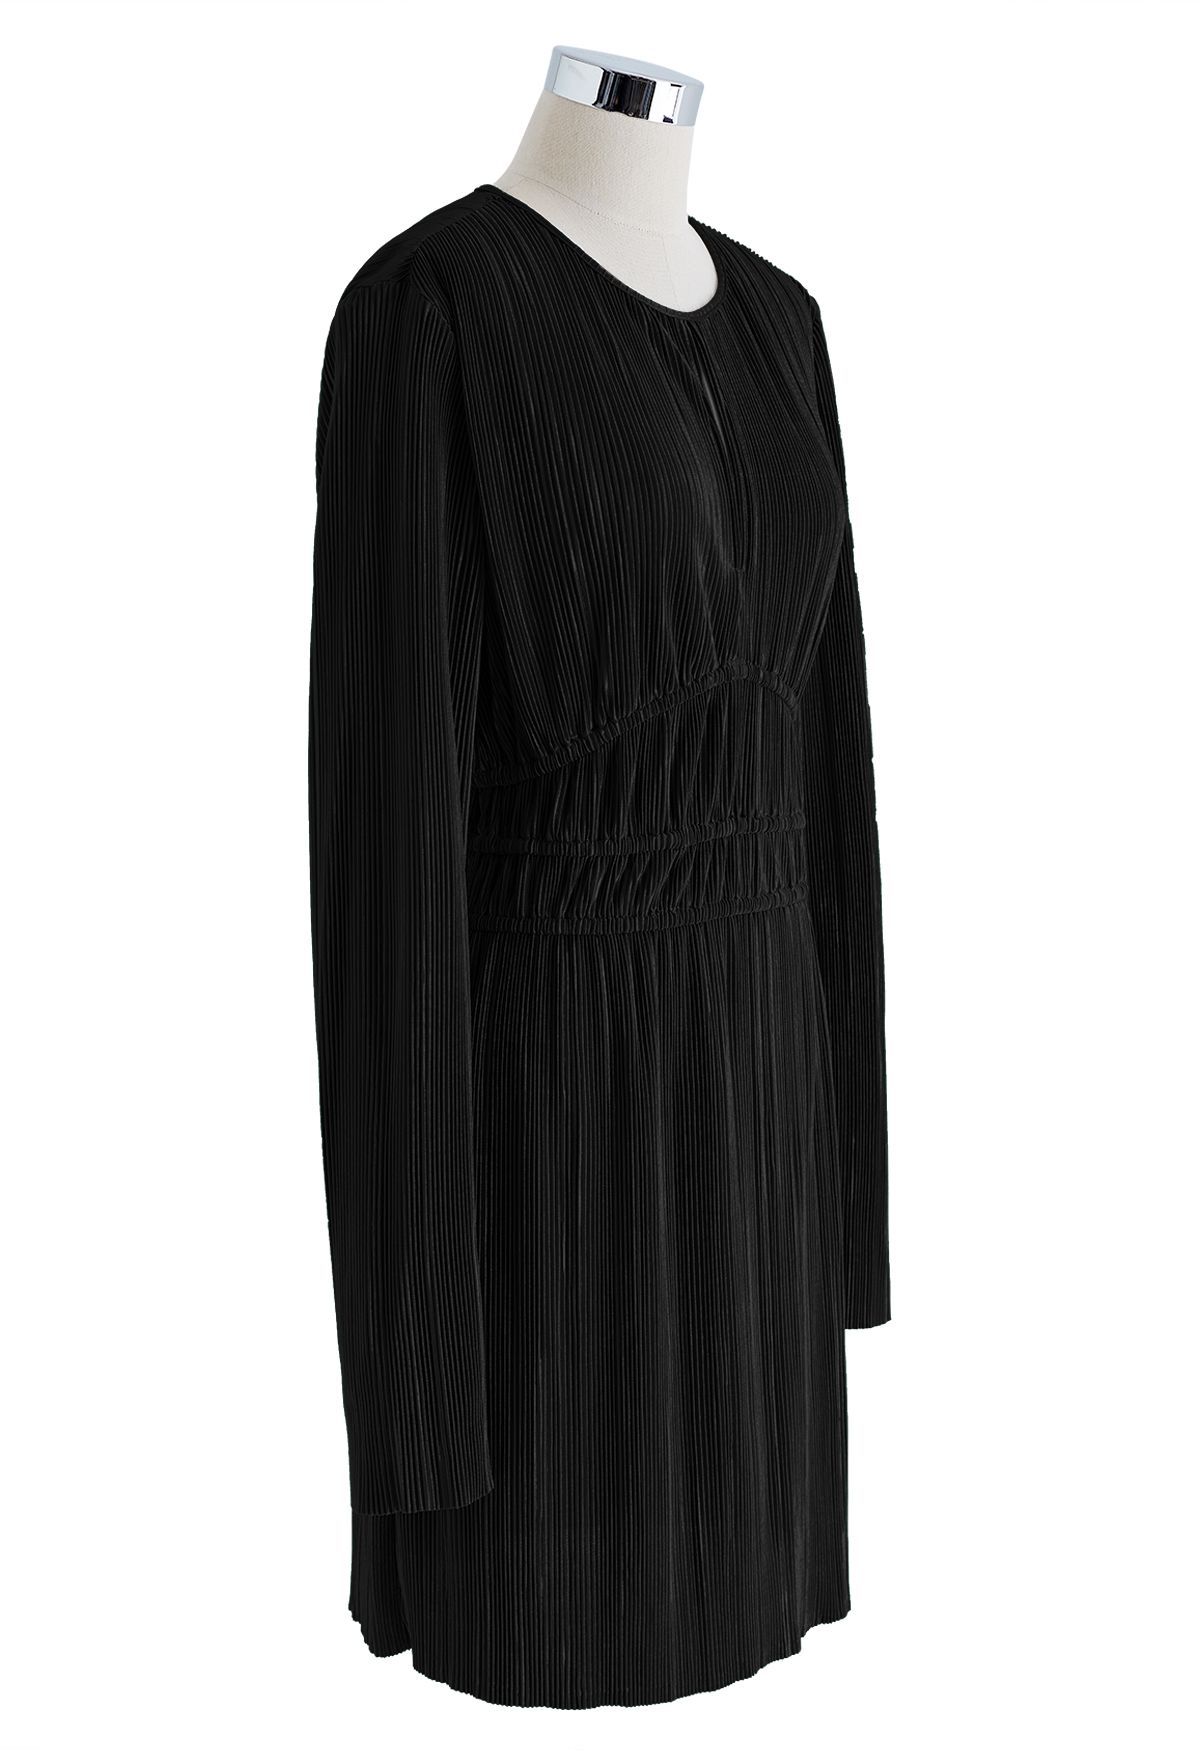 Vestido plisado completo con corte sin rematar en negro